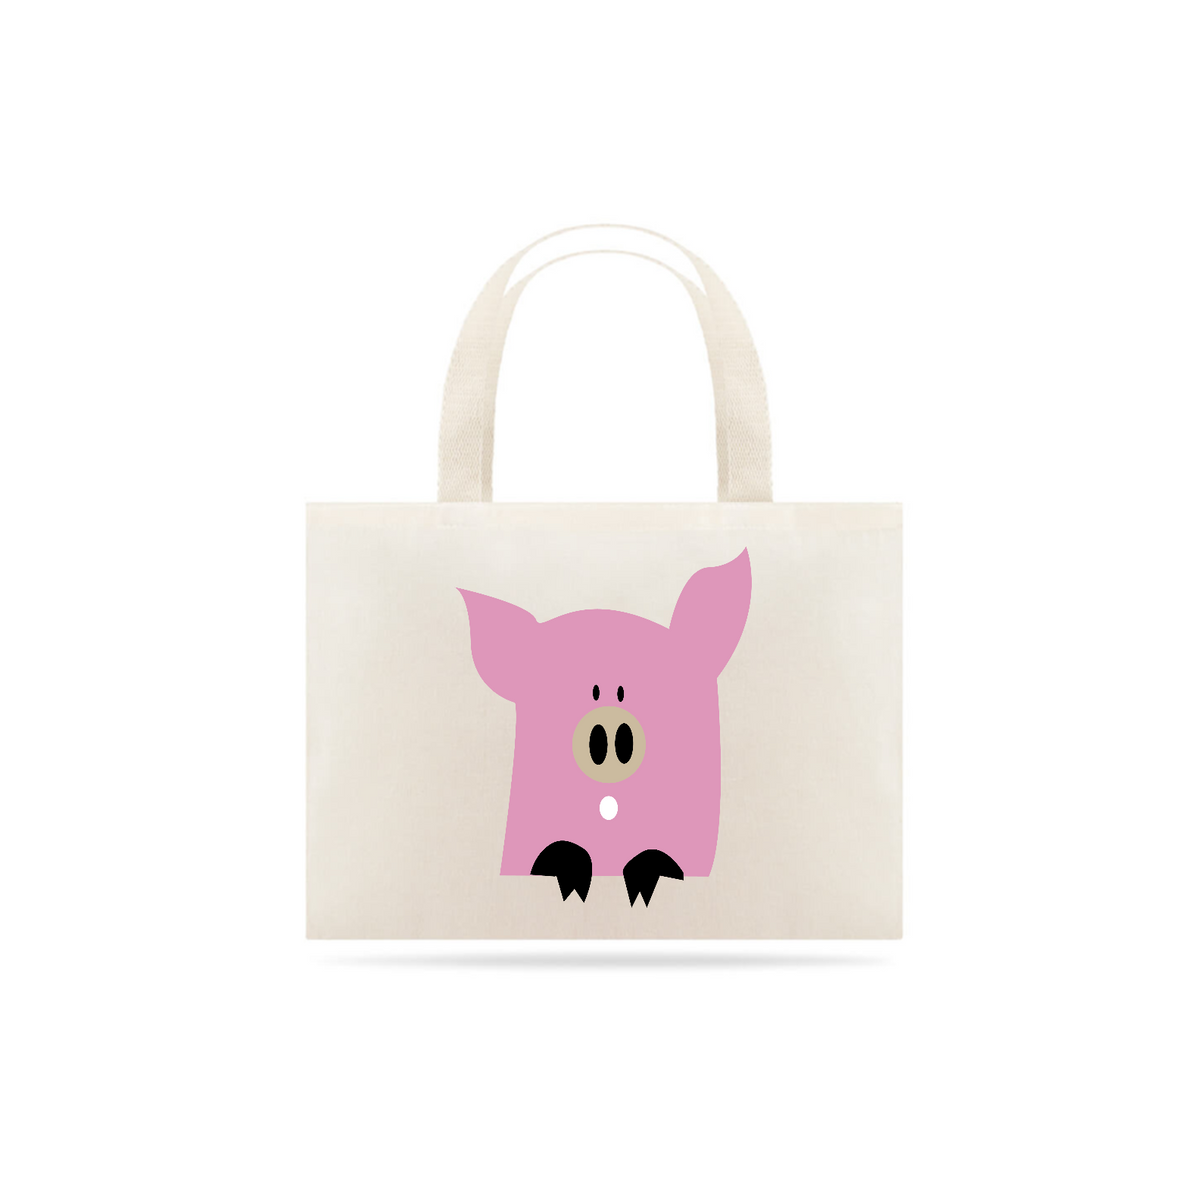 Nome do produto: Ecobag pink pig